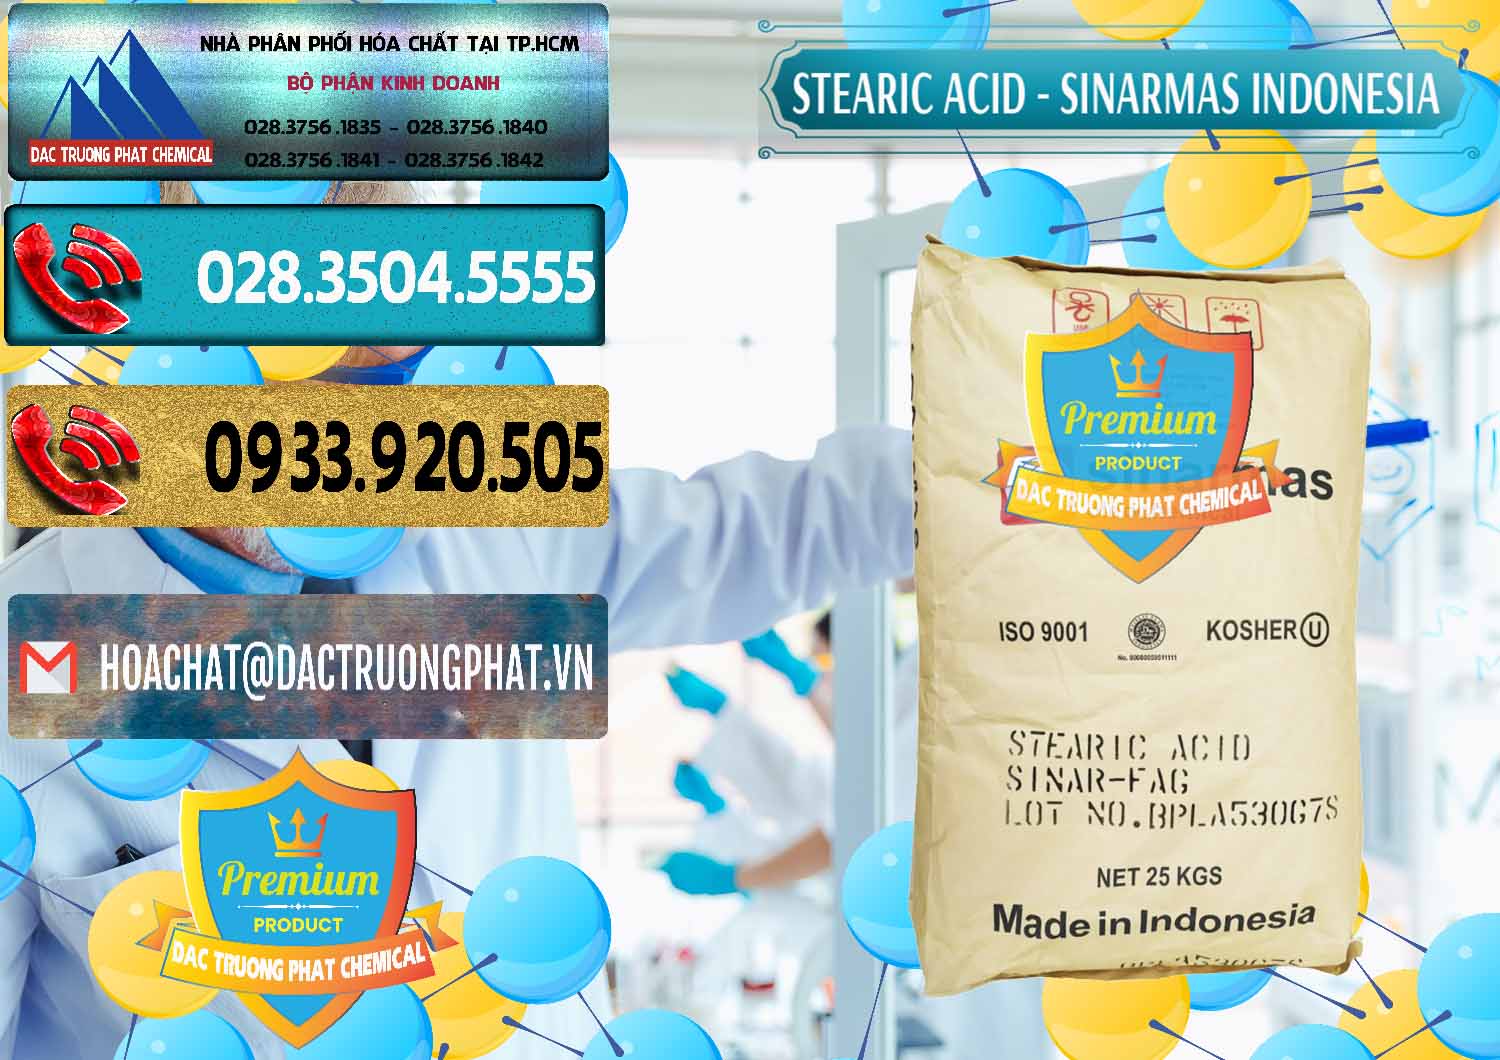 Cty chuyên phân phối ( bán ) Axit Stearic - Stearic Acid Sinarmas Indonesia - 0389 - Cung cấp và bán hóa chất tại TP.HCM - hoachatdetnhuom.com